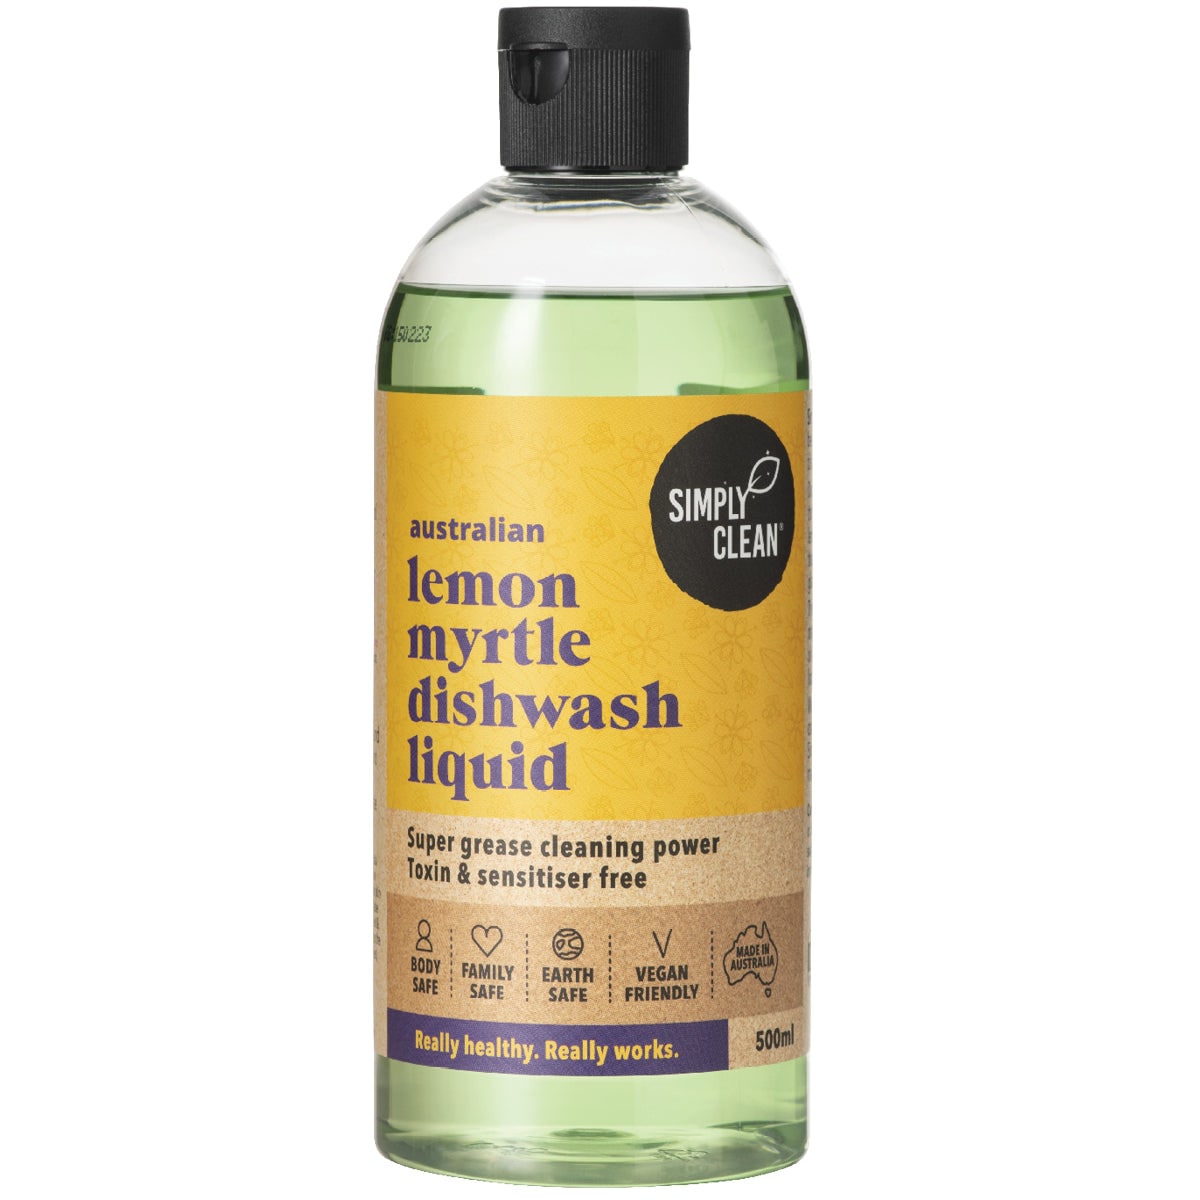 Simply Clean Lemon Myrtle Dishwash Liquid 500ml